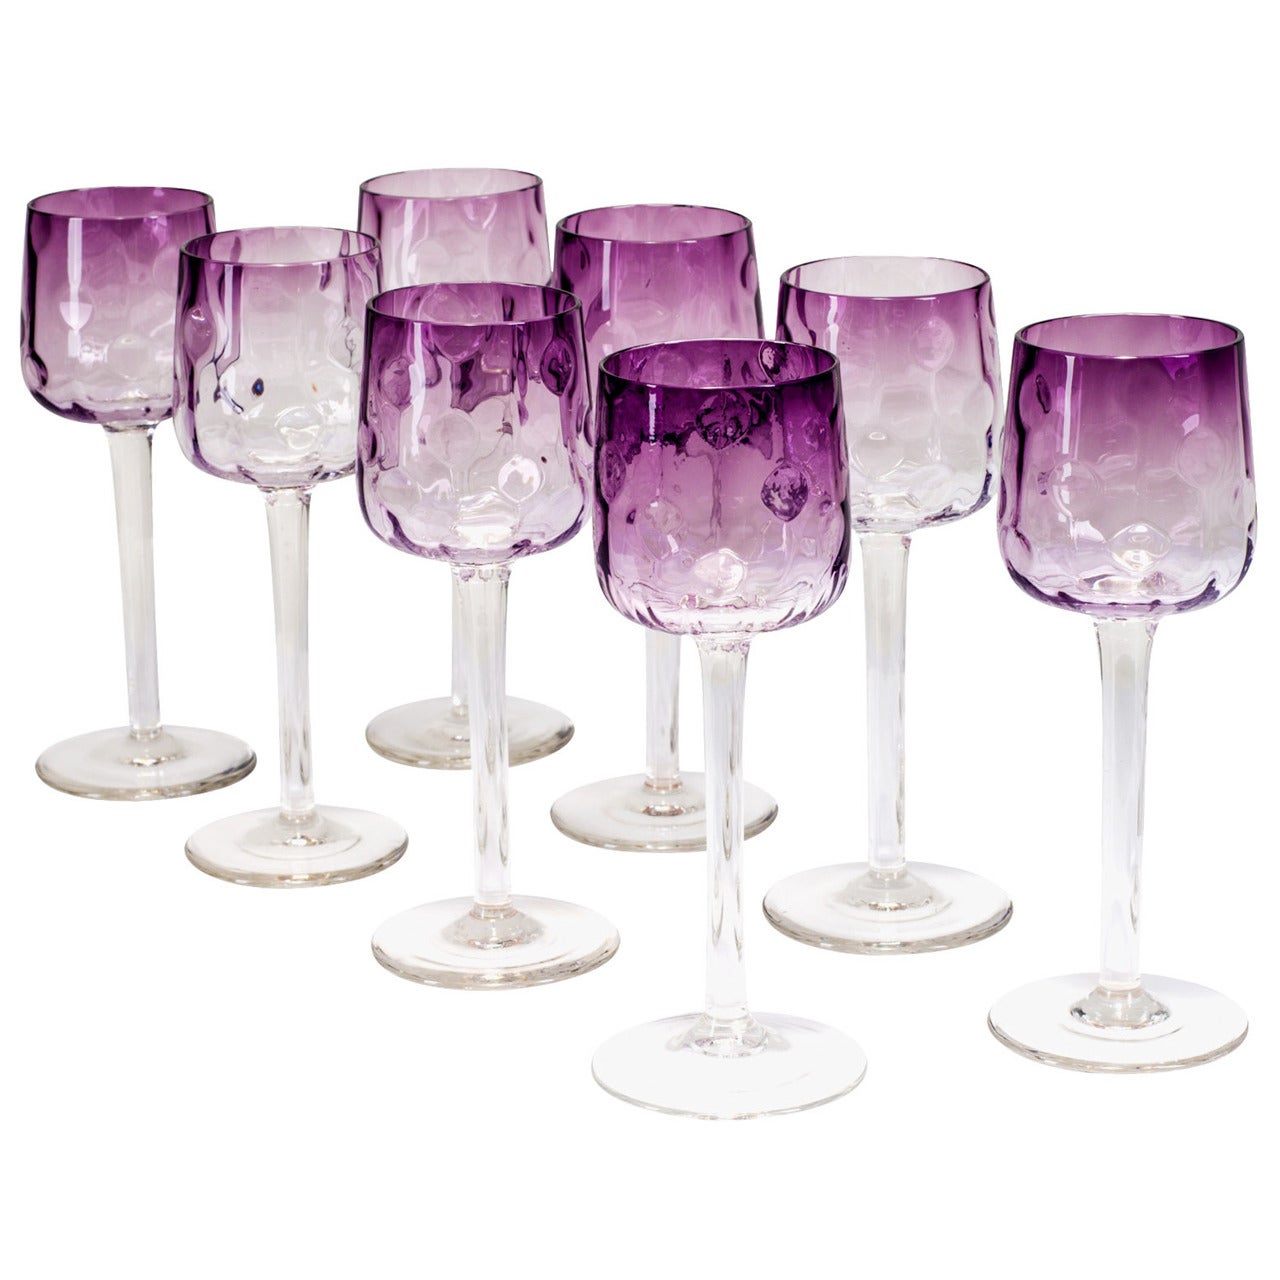 Set of 9 Wine Glasses Koloman Moser "Meteor“ ca. 1900 Austrian Jugendstil For Sale